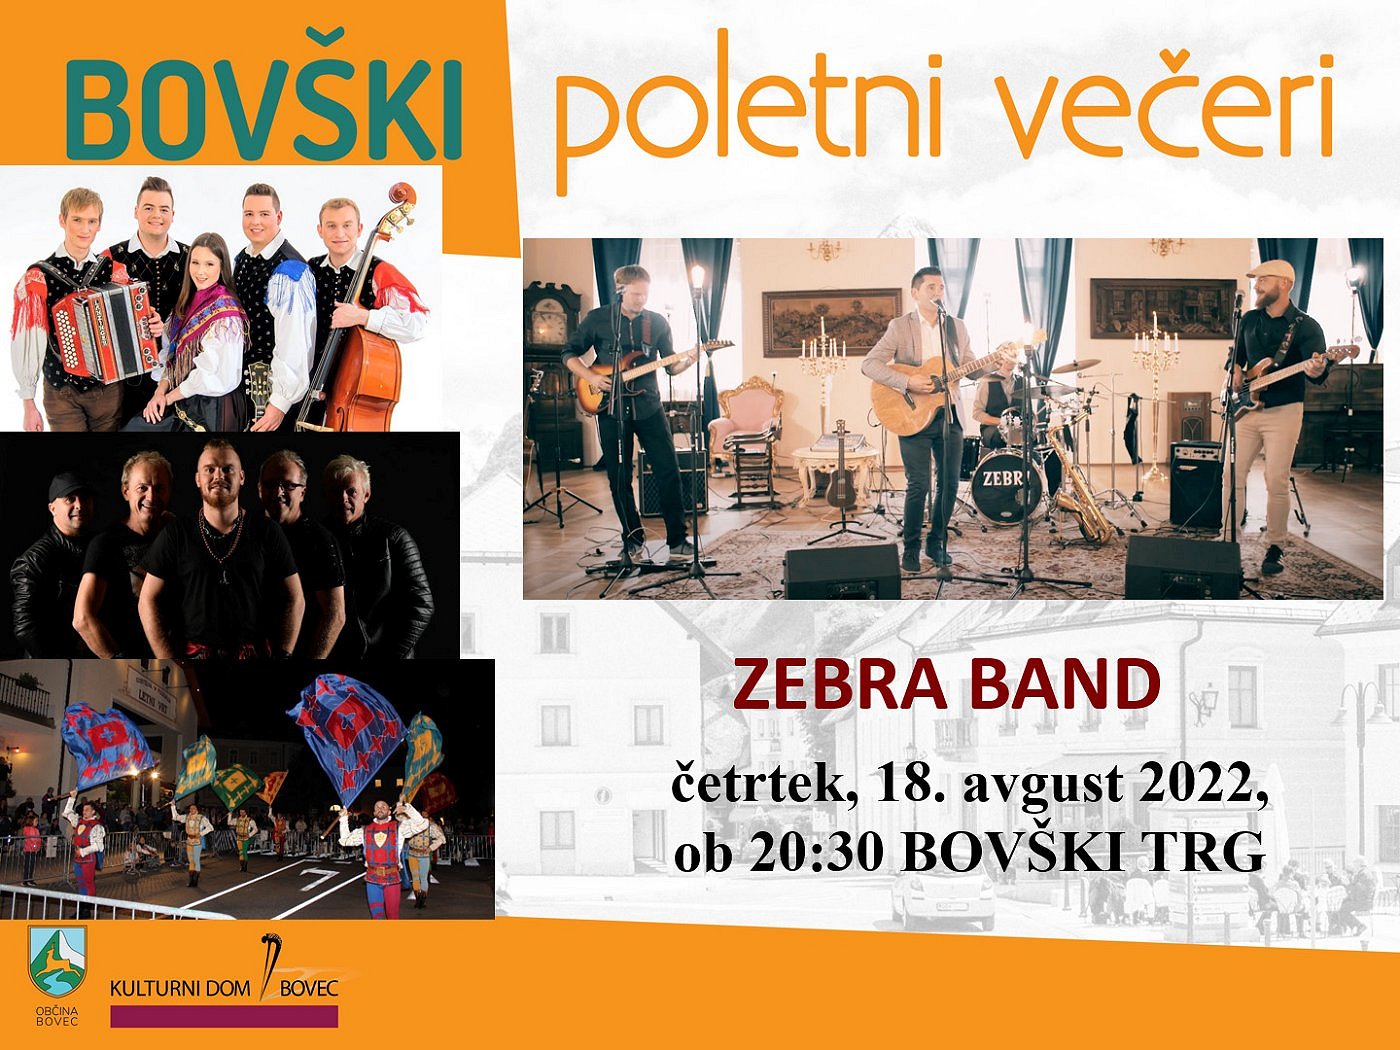 Bovški poletni večeri 2022 - Zebra band